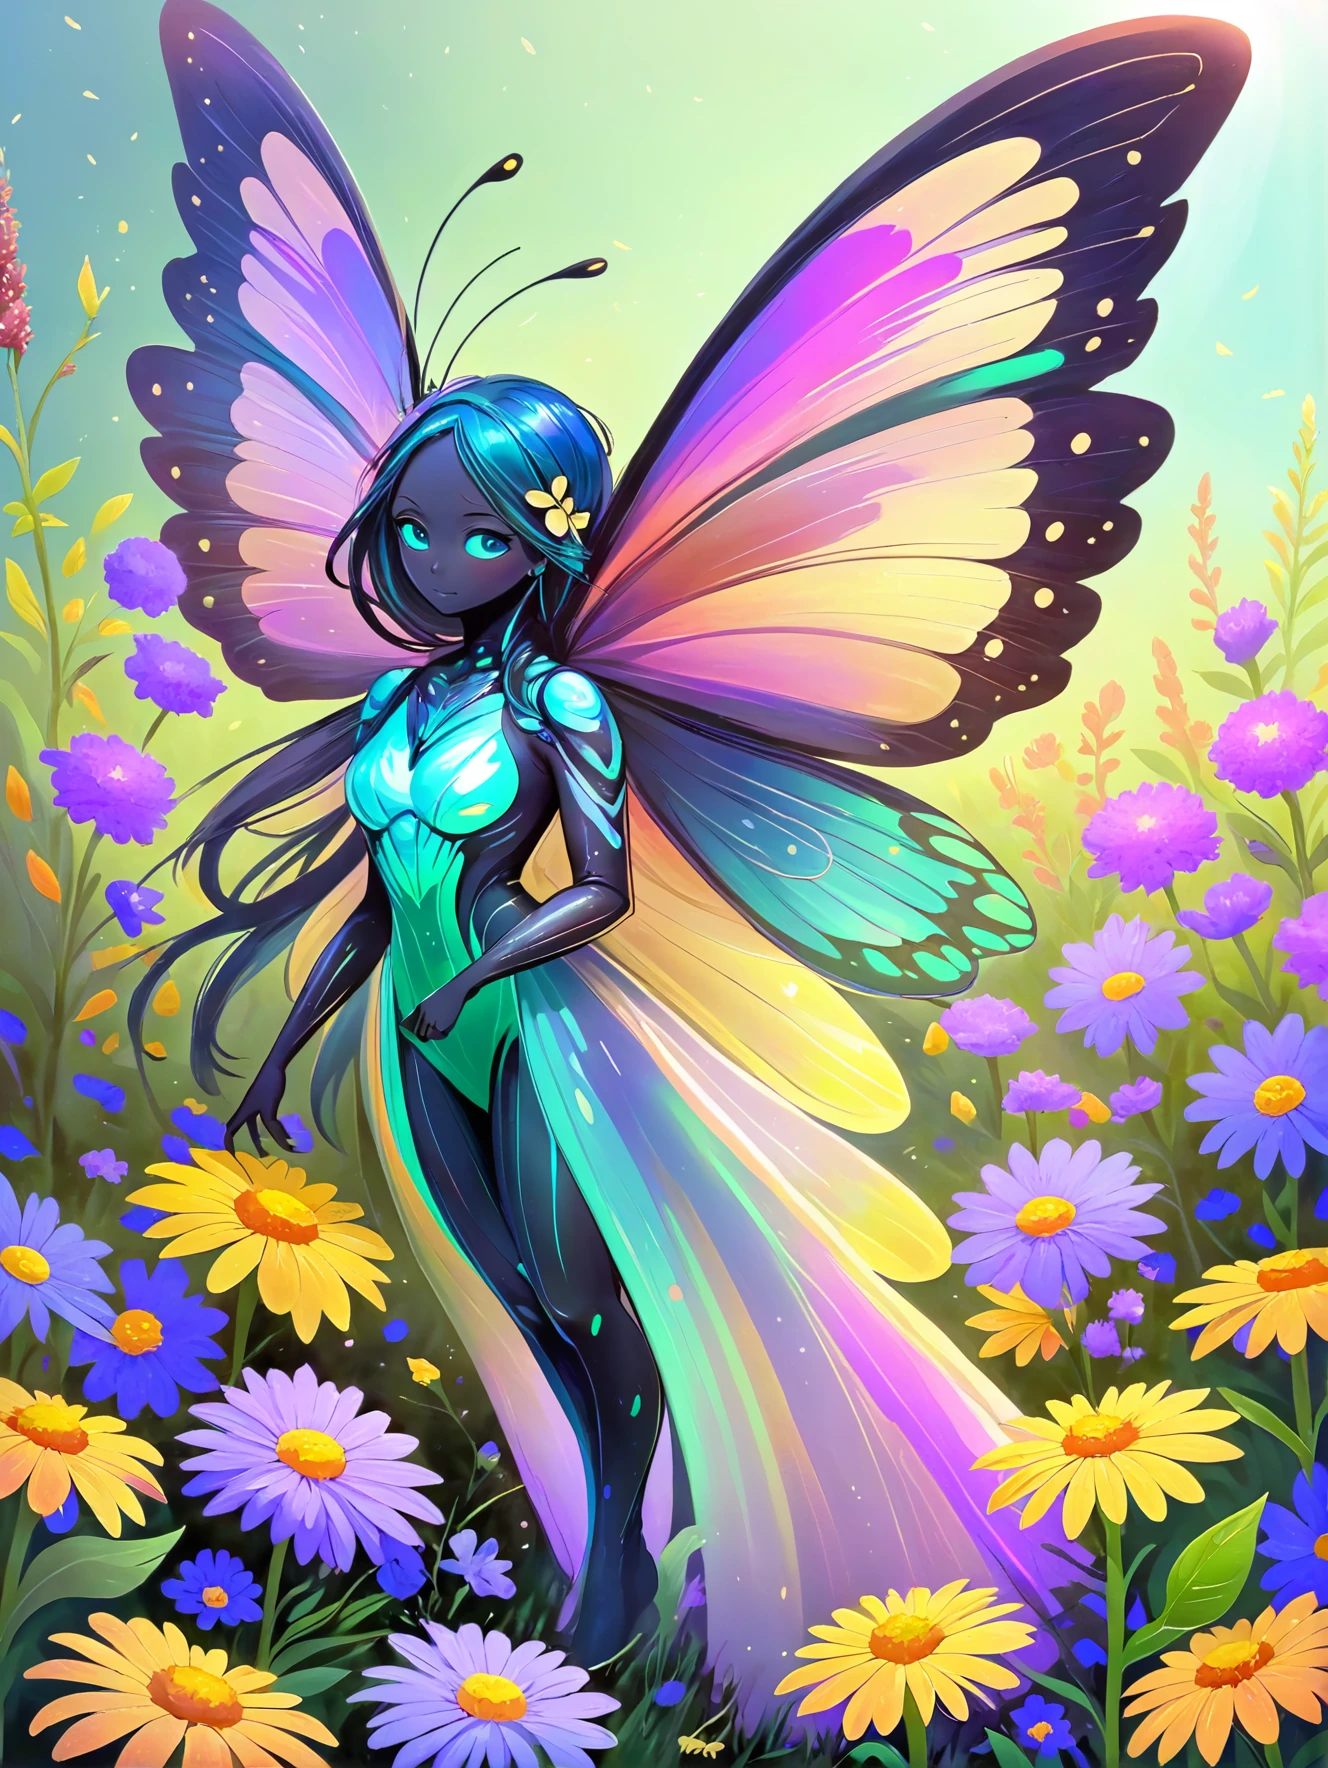 Um espírito vibrante de borboleta, com asas iridescentes, flutuando entre um campo de flores silvestres.